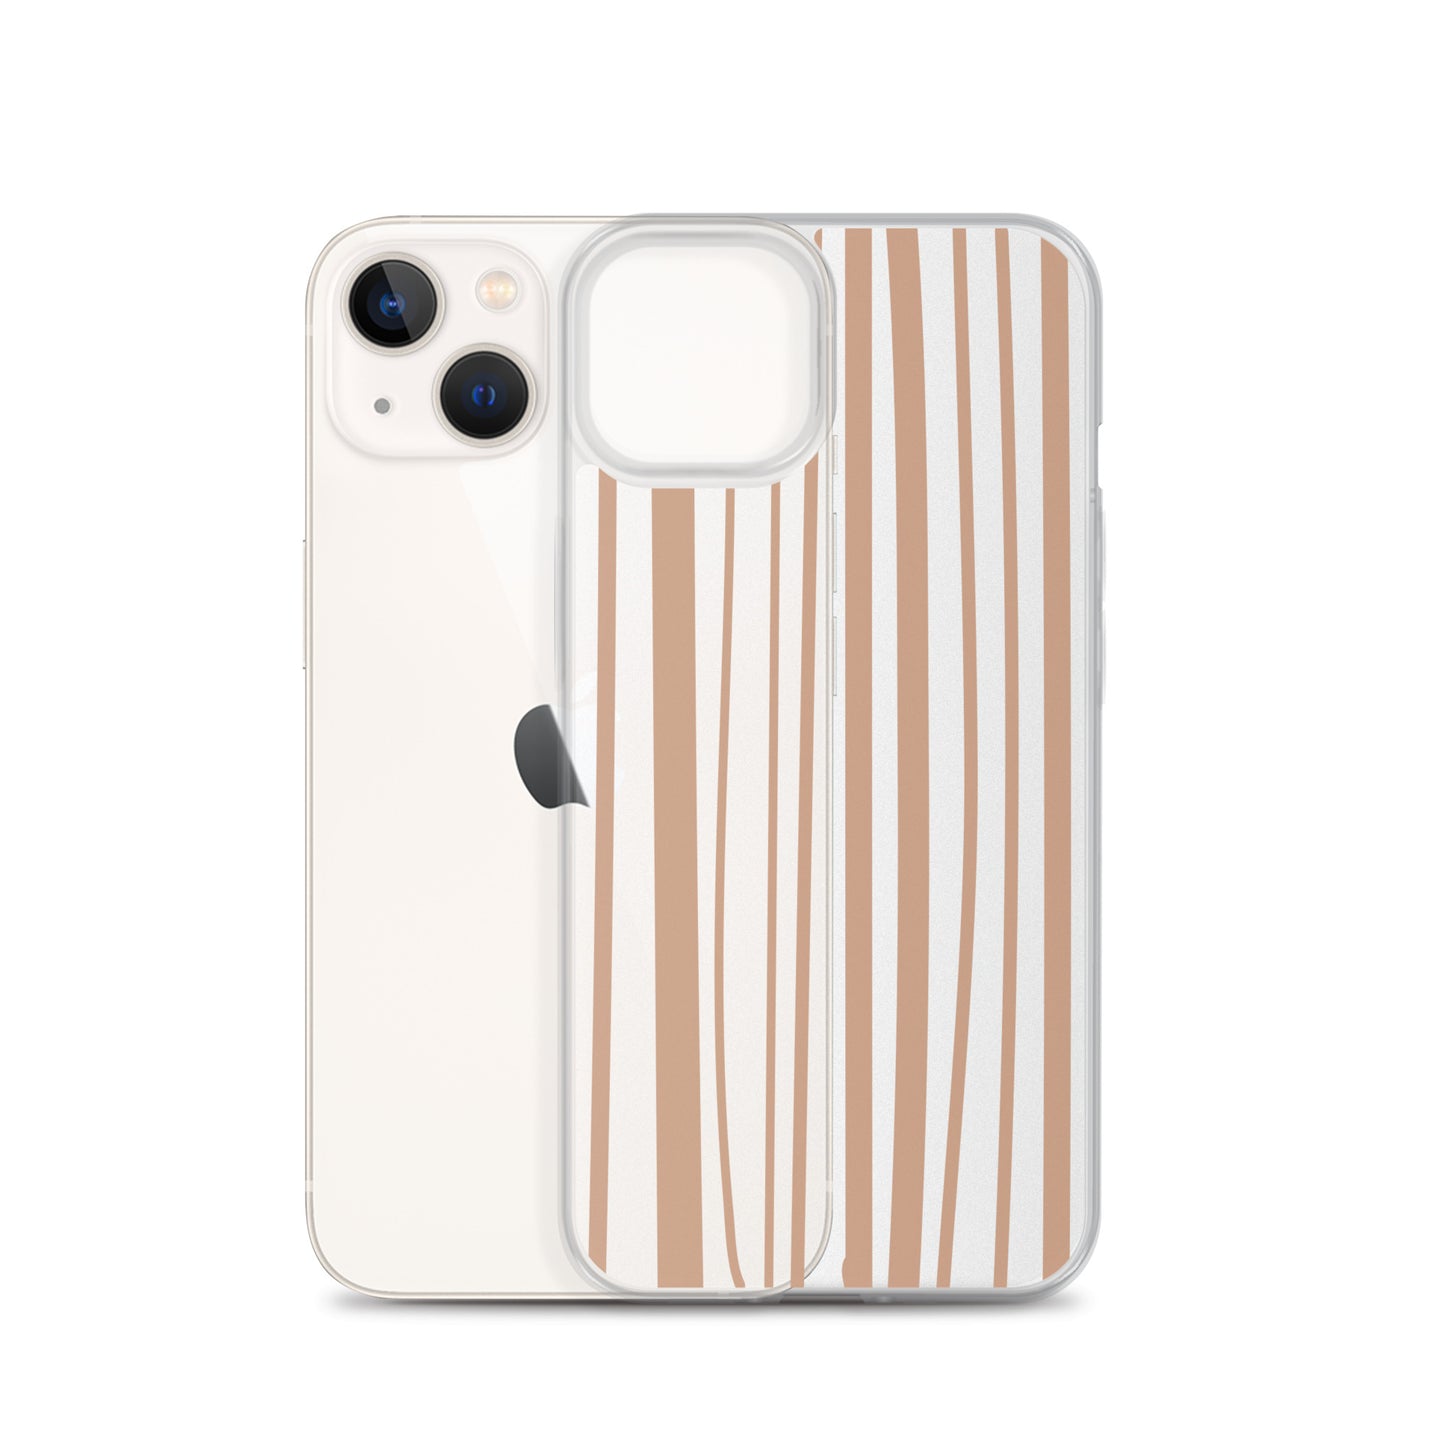 Beige Rustic Striped Pattern iPhone Case